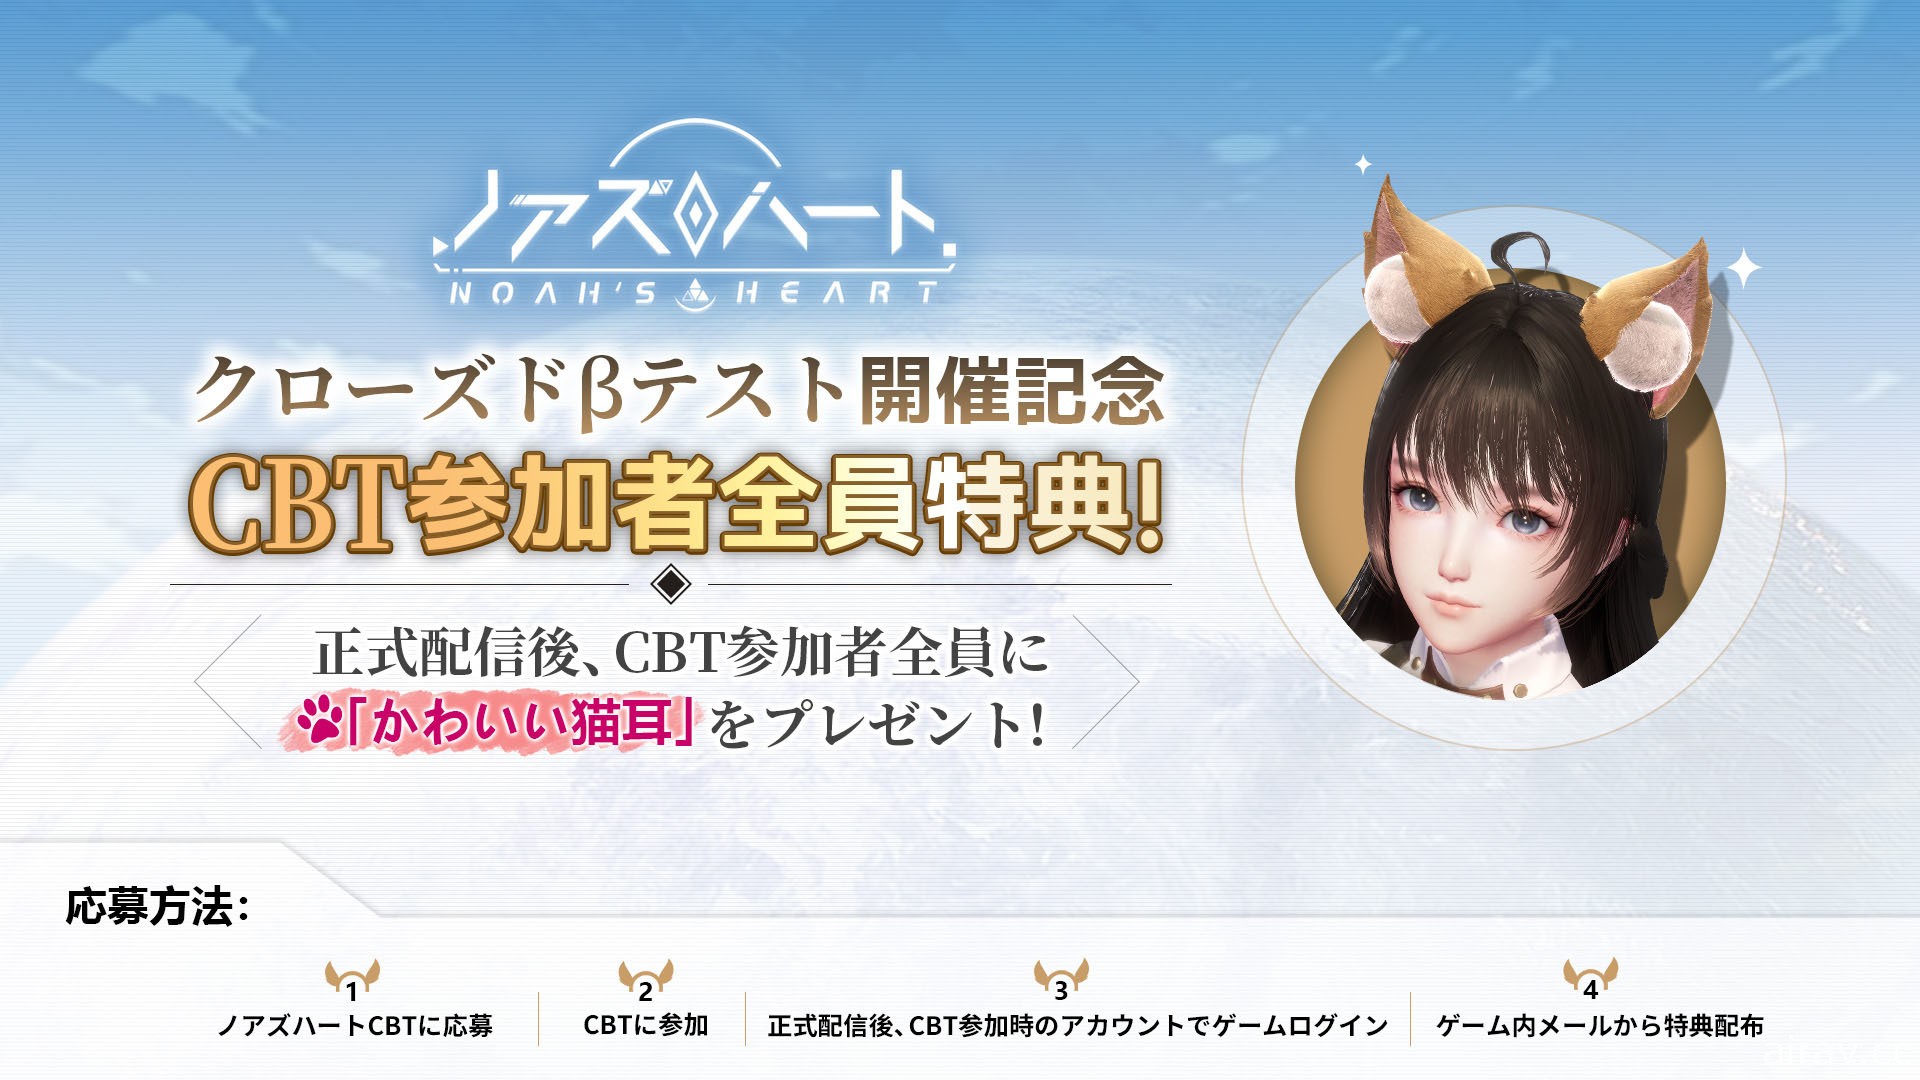 星球探索型开放世界 RPG《诺亚之心》明日于日本展开 CBT 测试